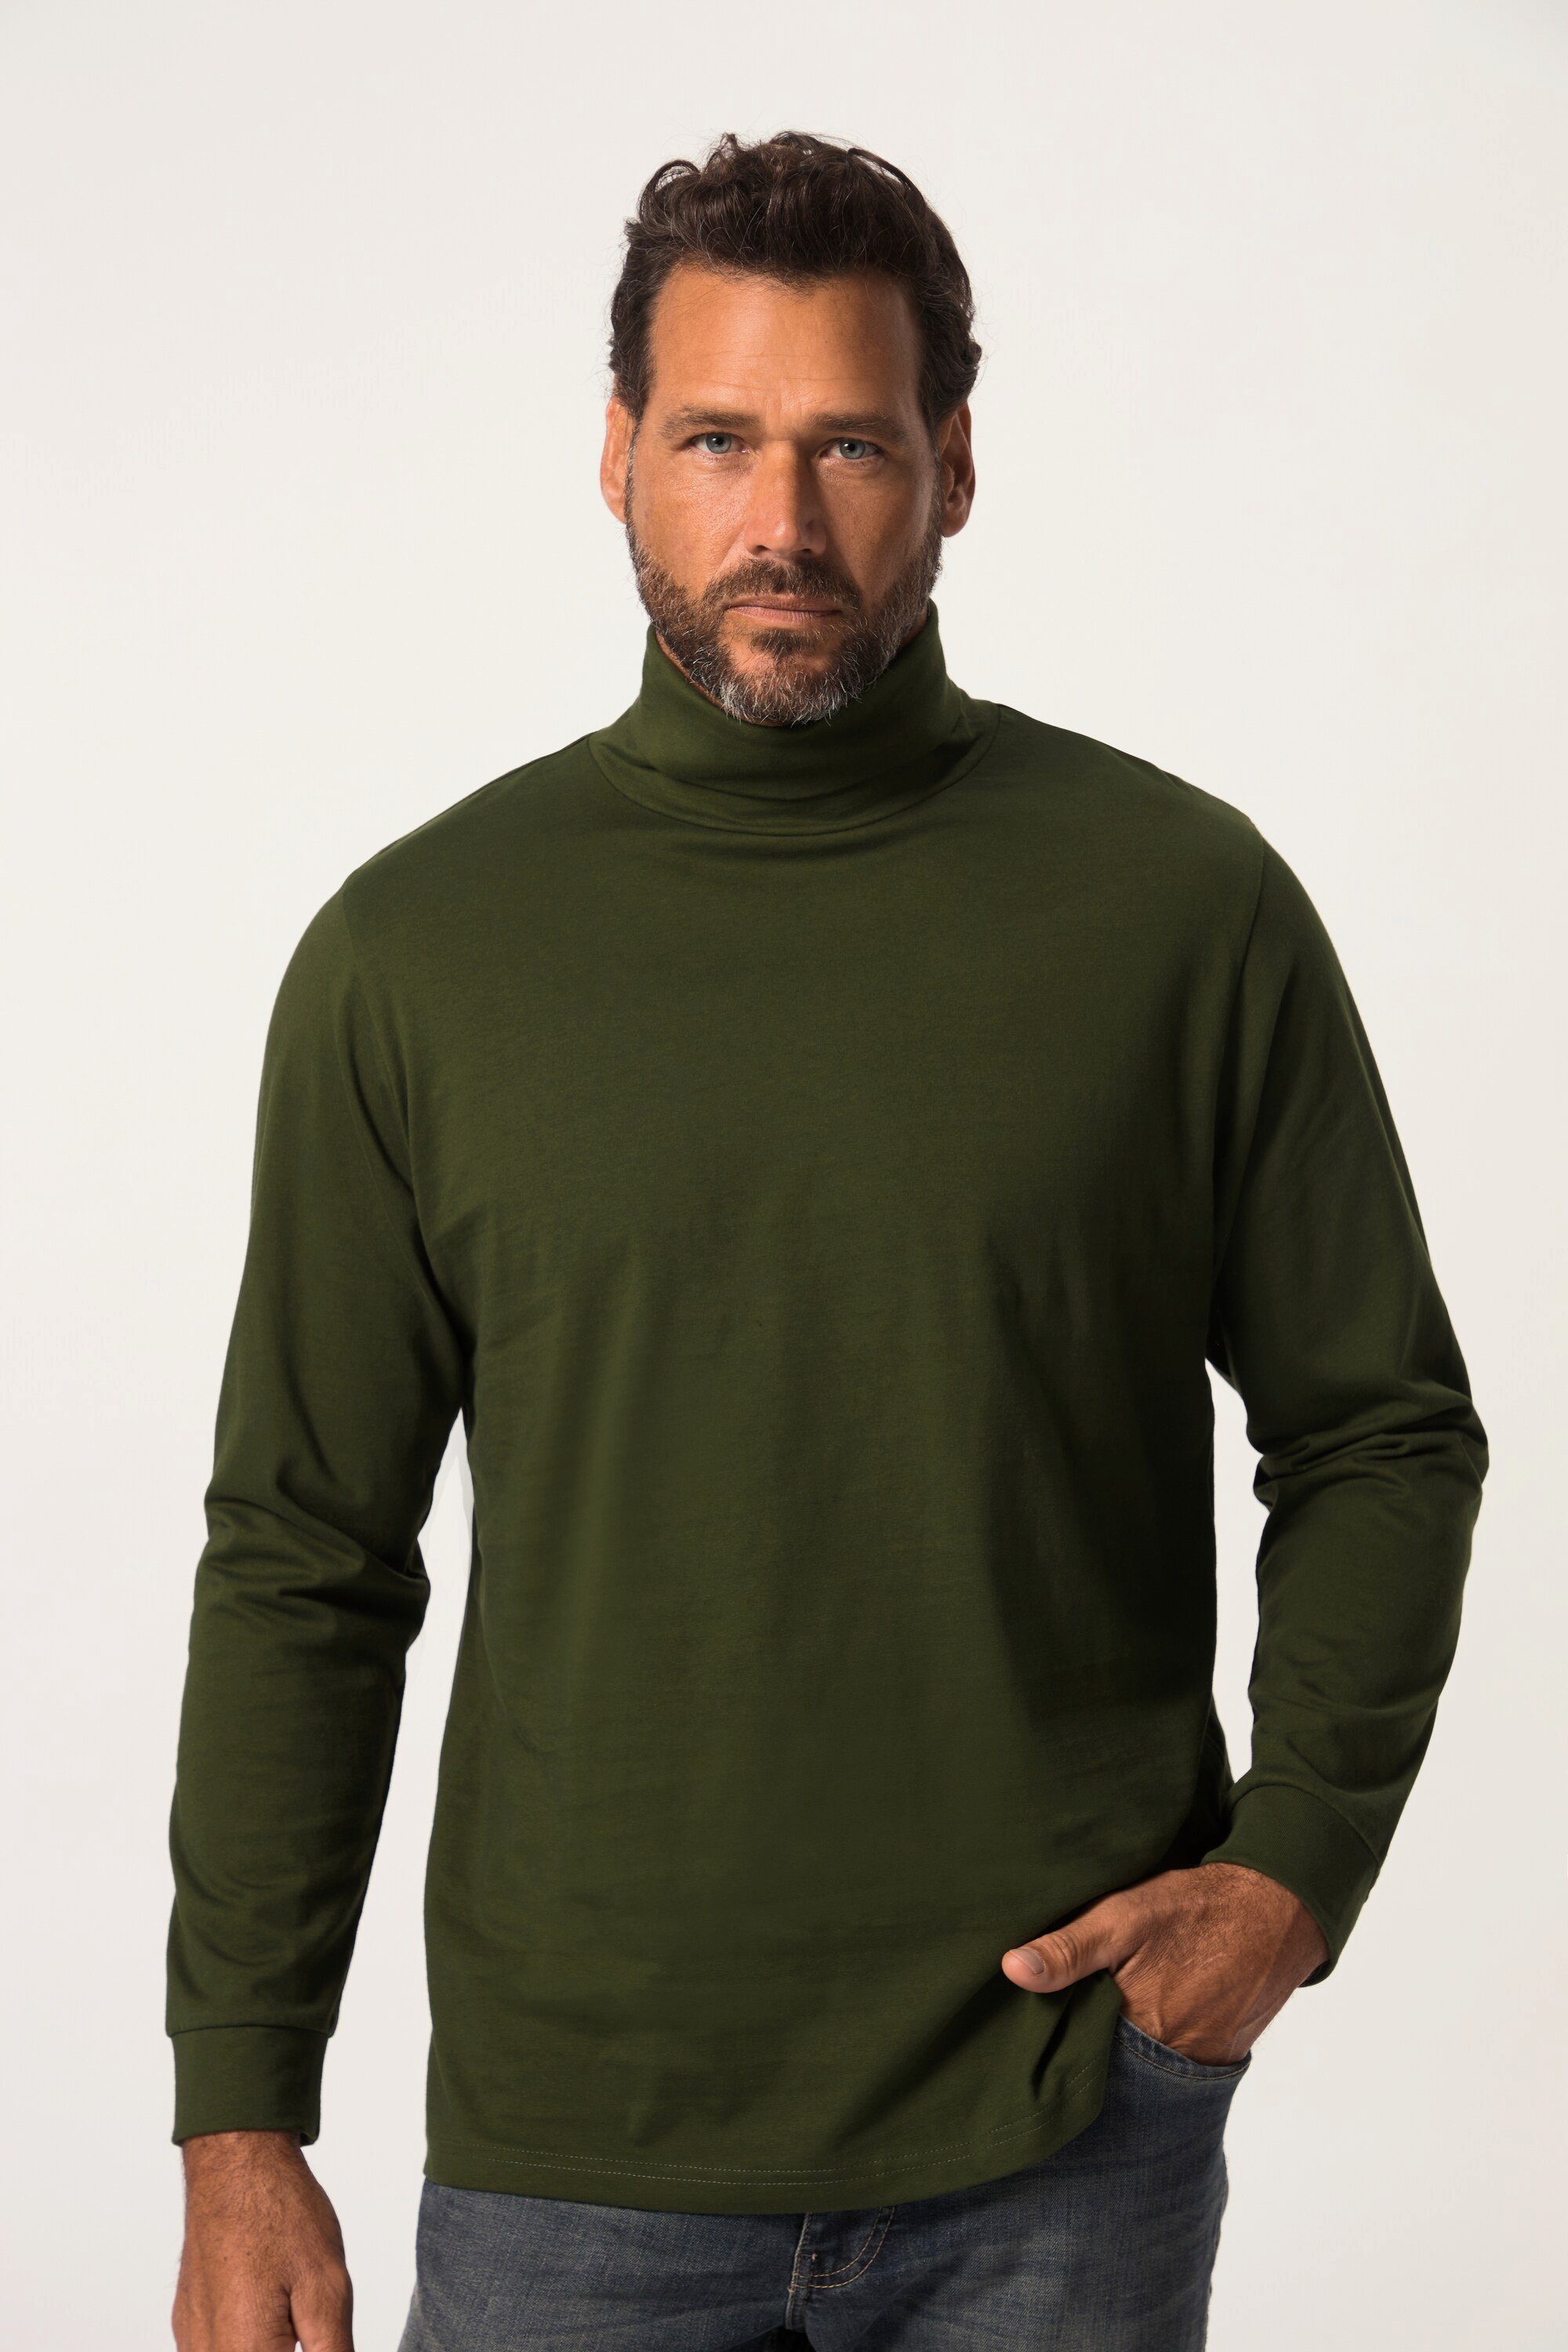 Gehen Sie zum Online-Shop! JP1880 T-Shirt Rollkragen-Shirt Basic Jersey oliv Ärmel lange